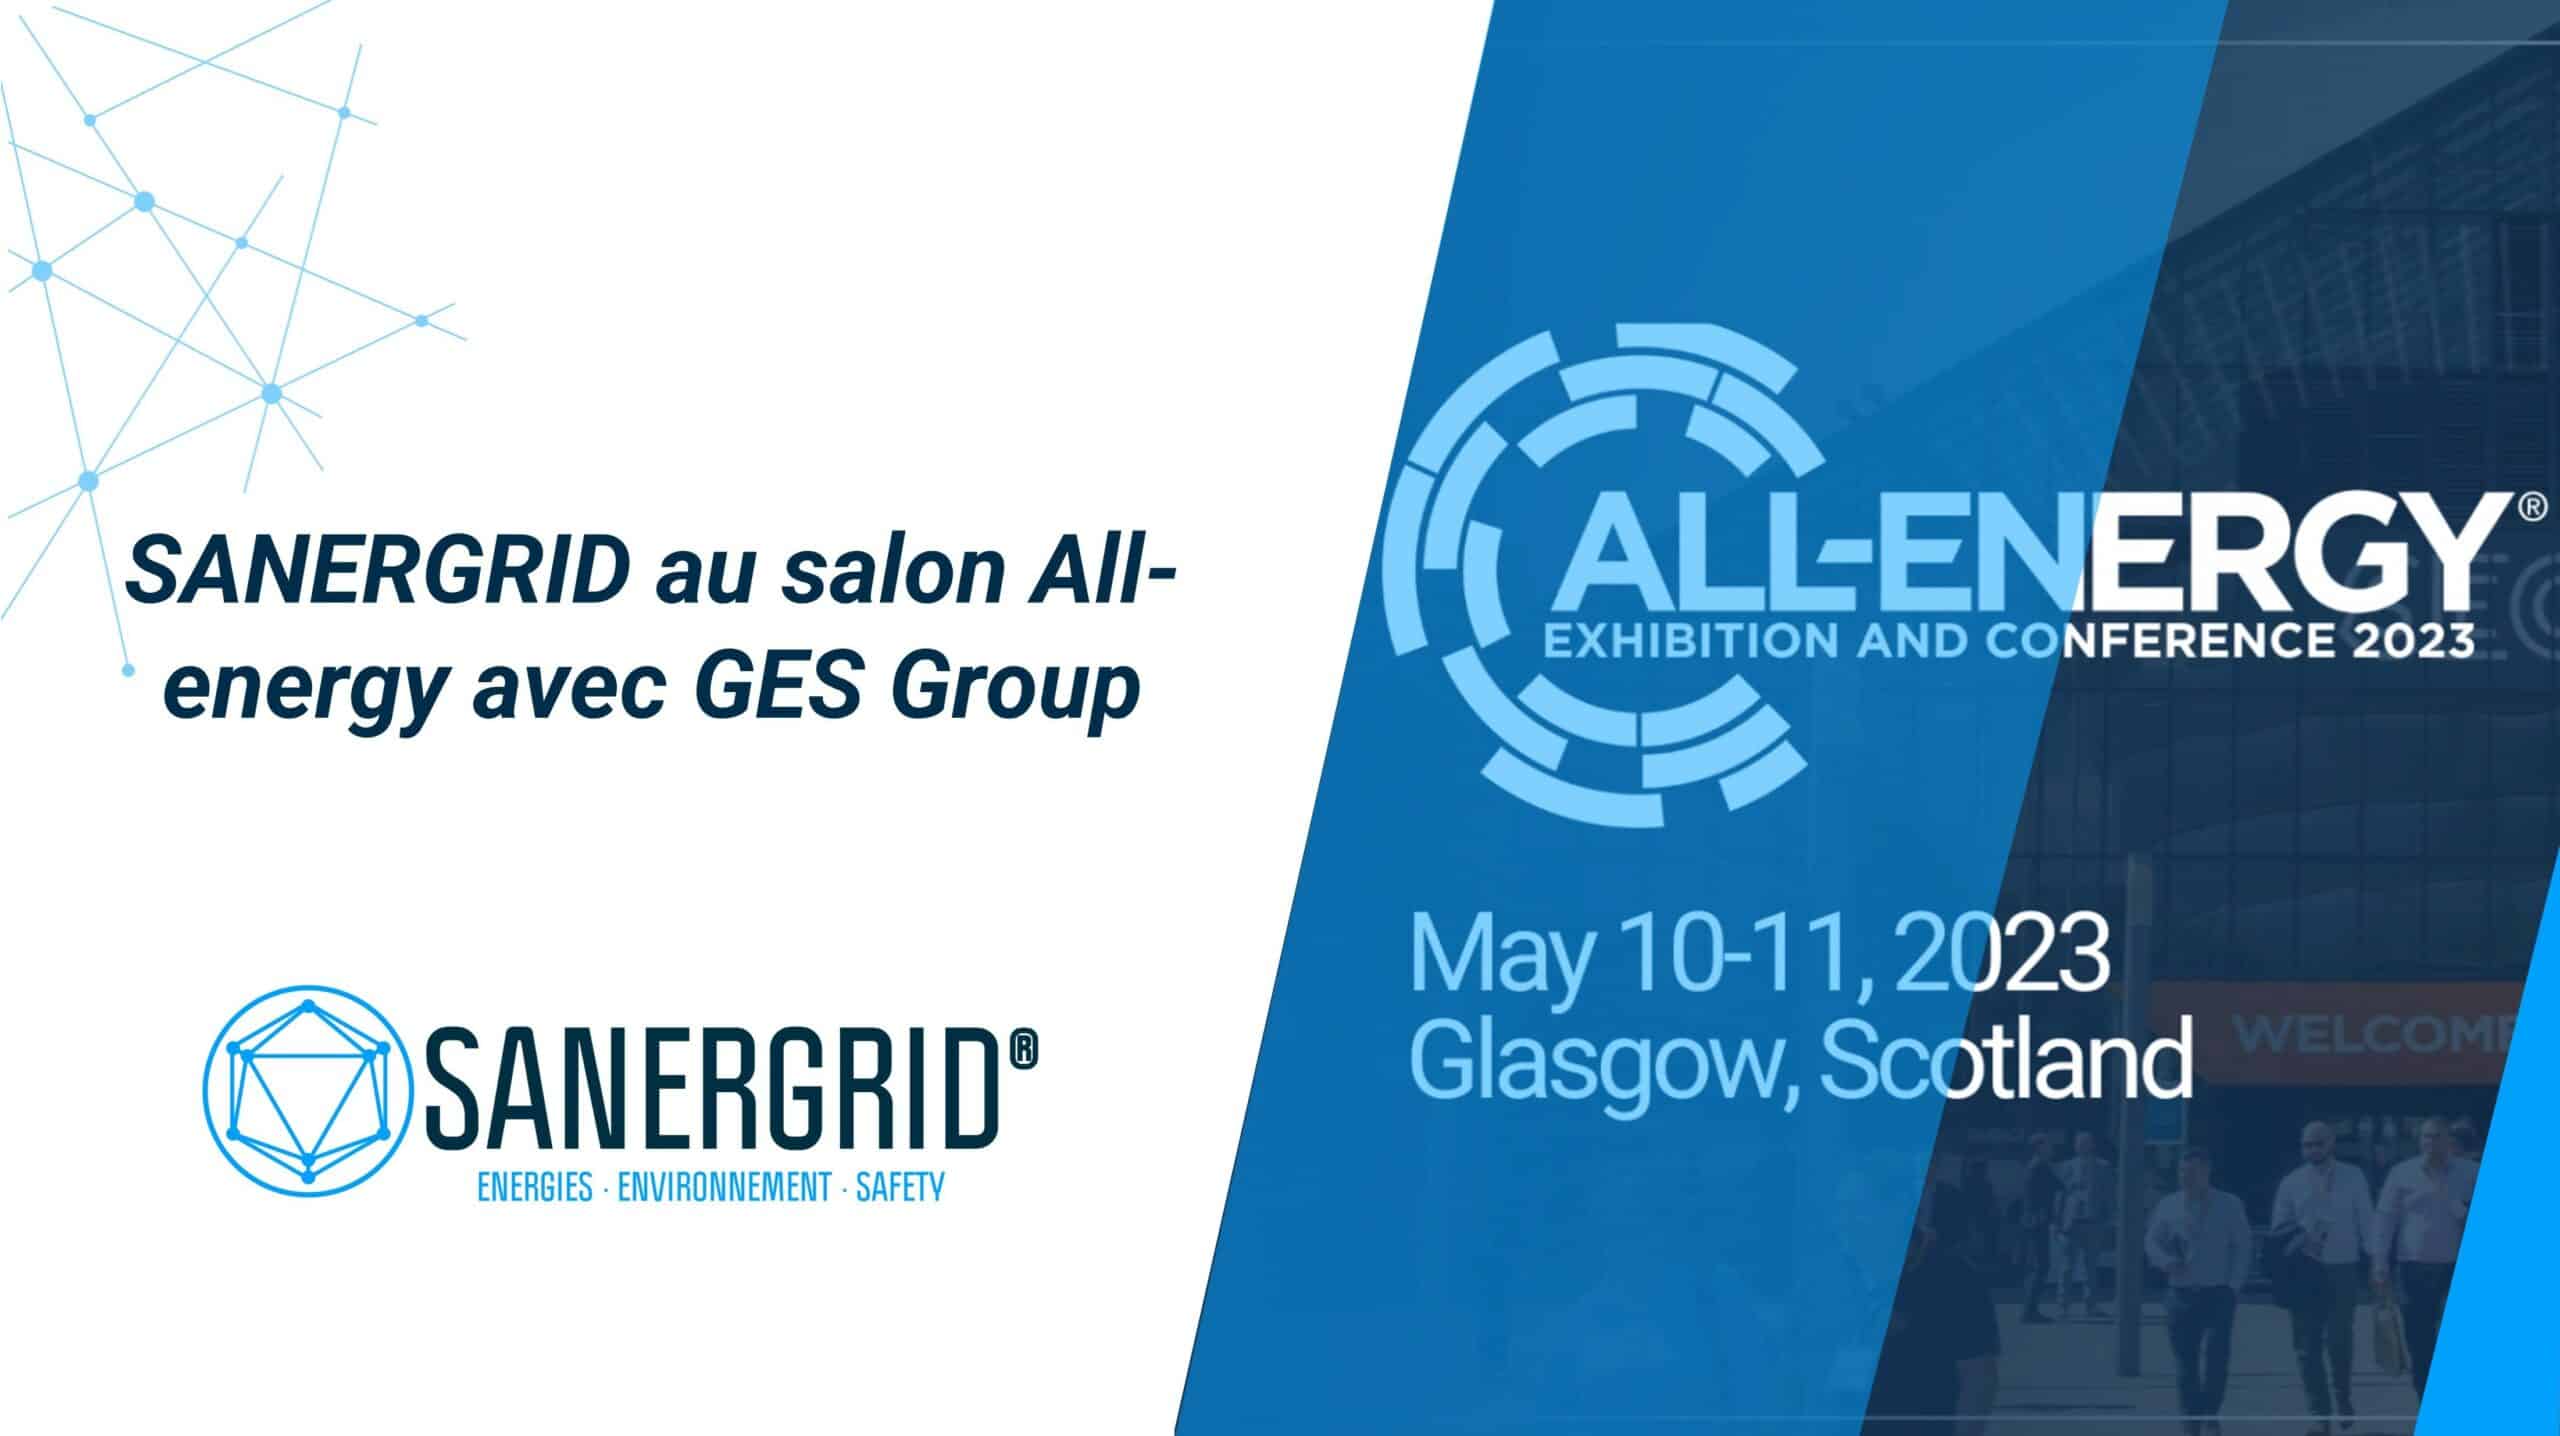 SANERGRID et SYNERDIS au salon All-Energy Exhibition and Conference en mai 2023 avec GES Group